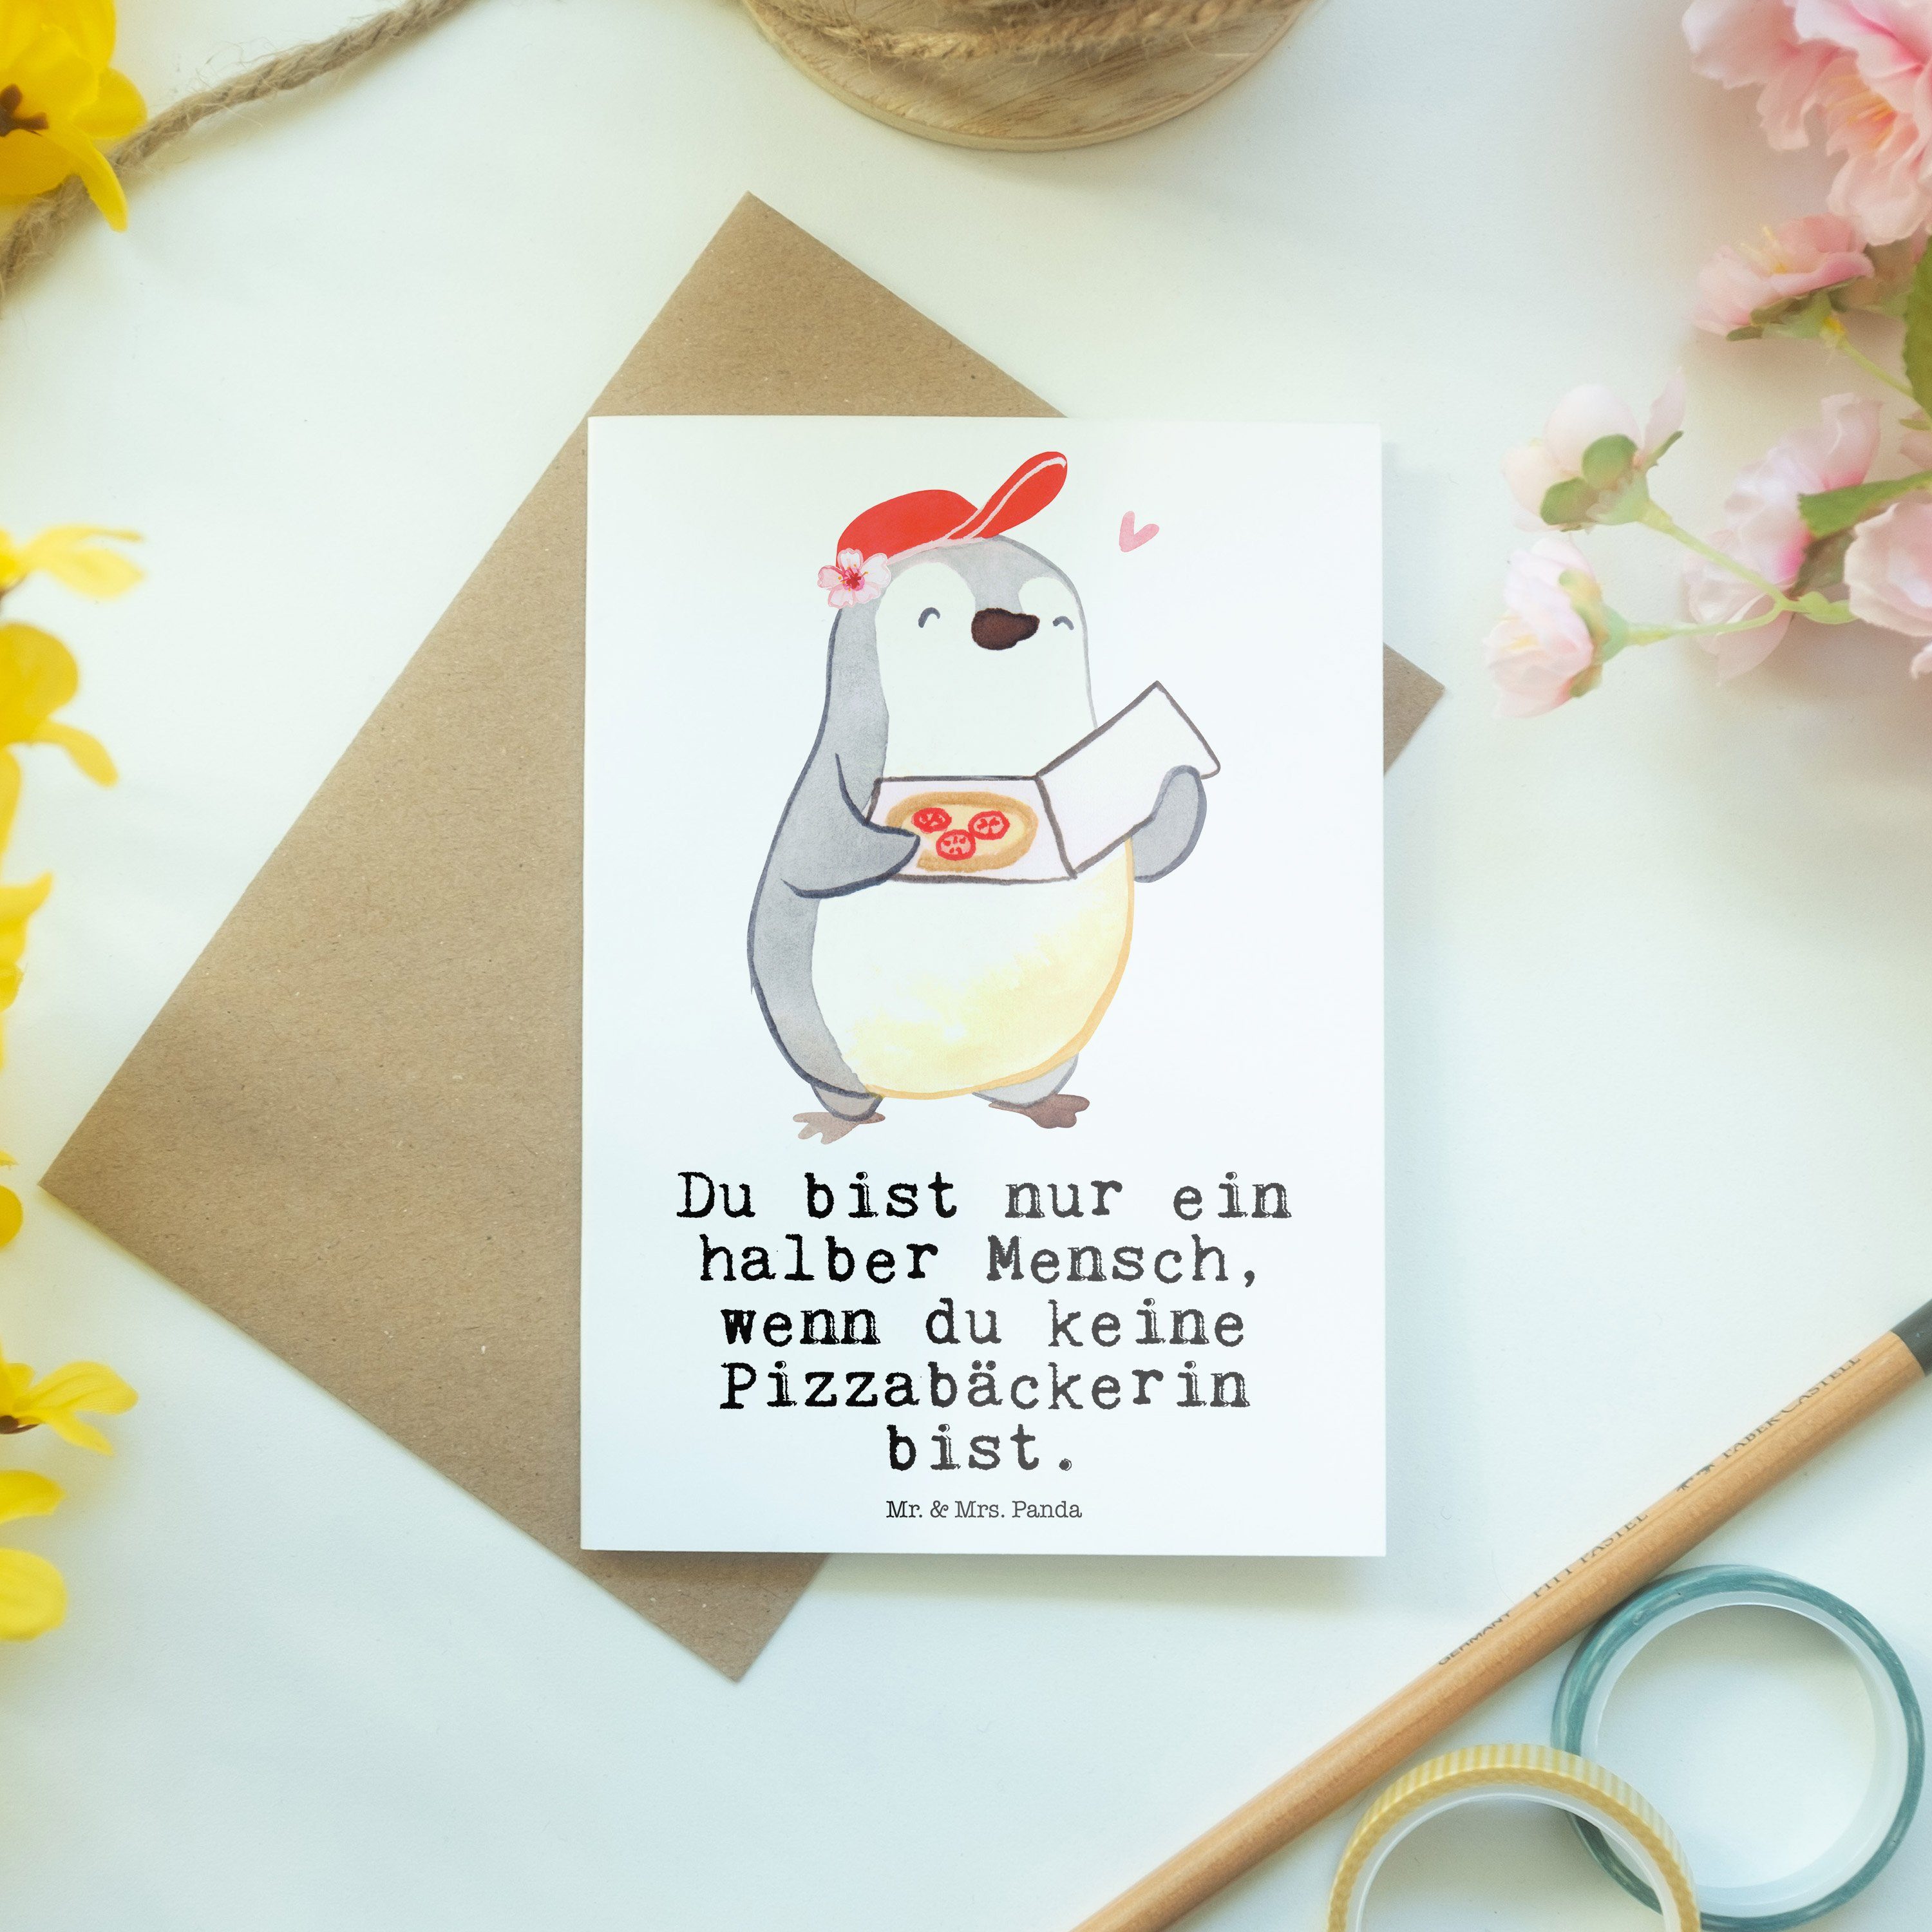 Mr. & Herz - Panda Weiß - Grußkarte mit Geschenk, Pizzabäckerin Klappkart Geburtstagskarte, Mrs.